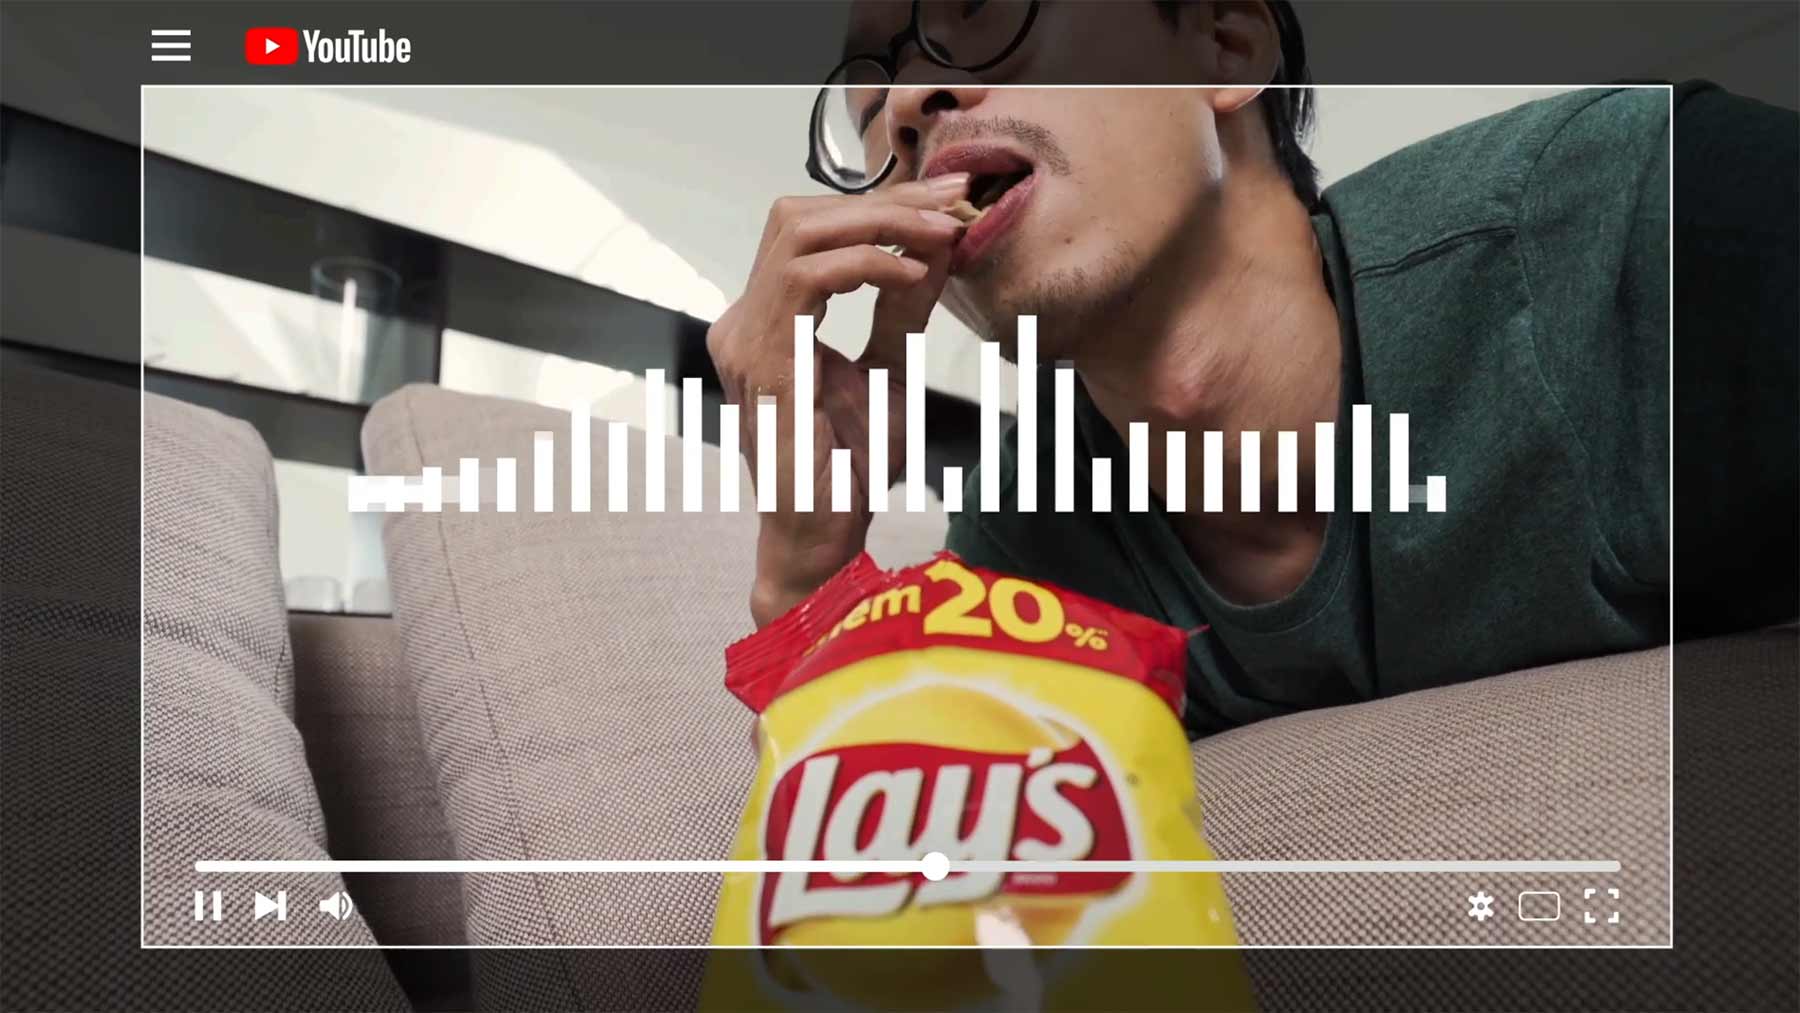 Plugin aktiviert Untertitel bei Chips-Knabbergeräuschen